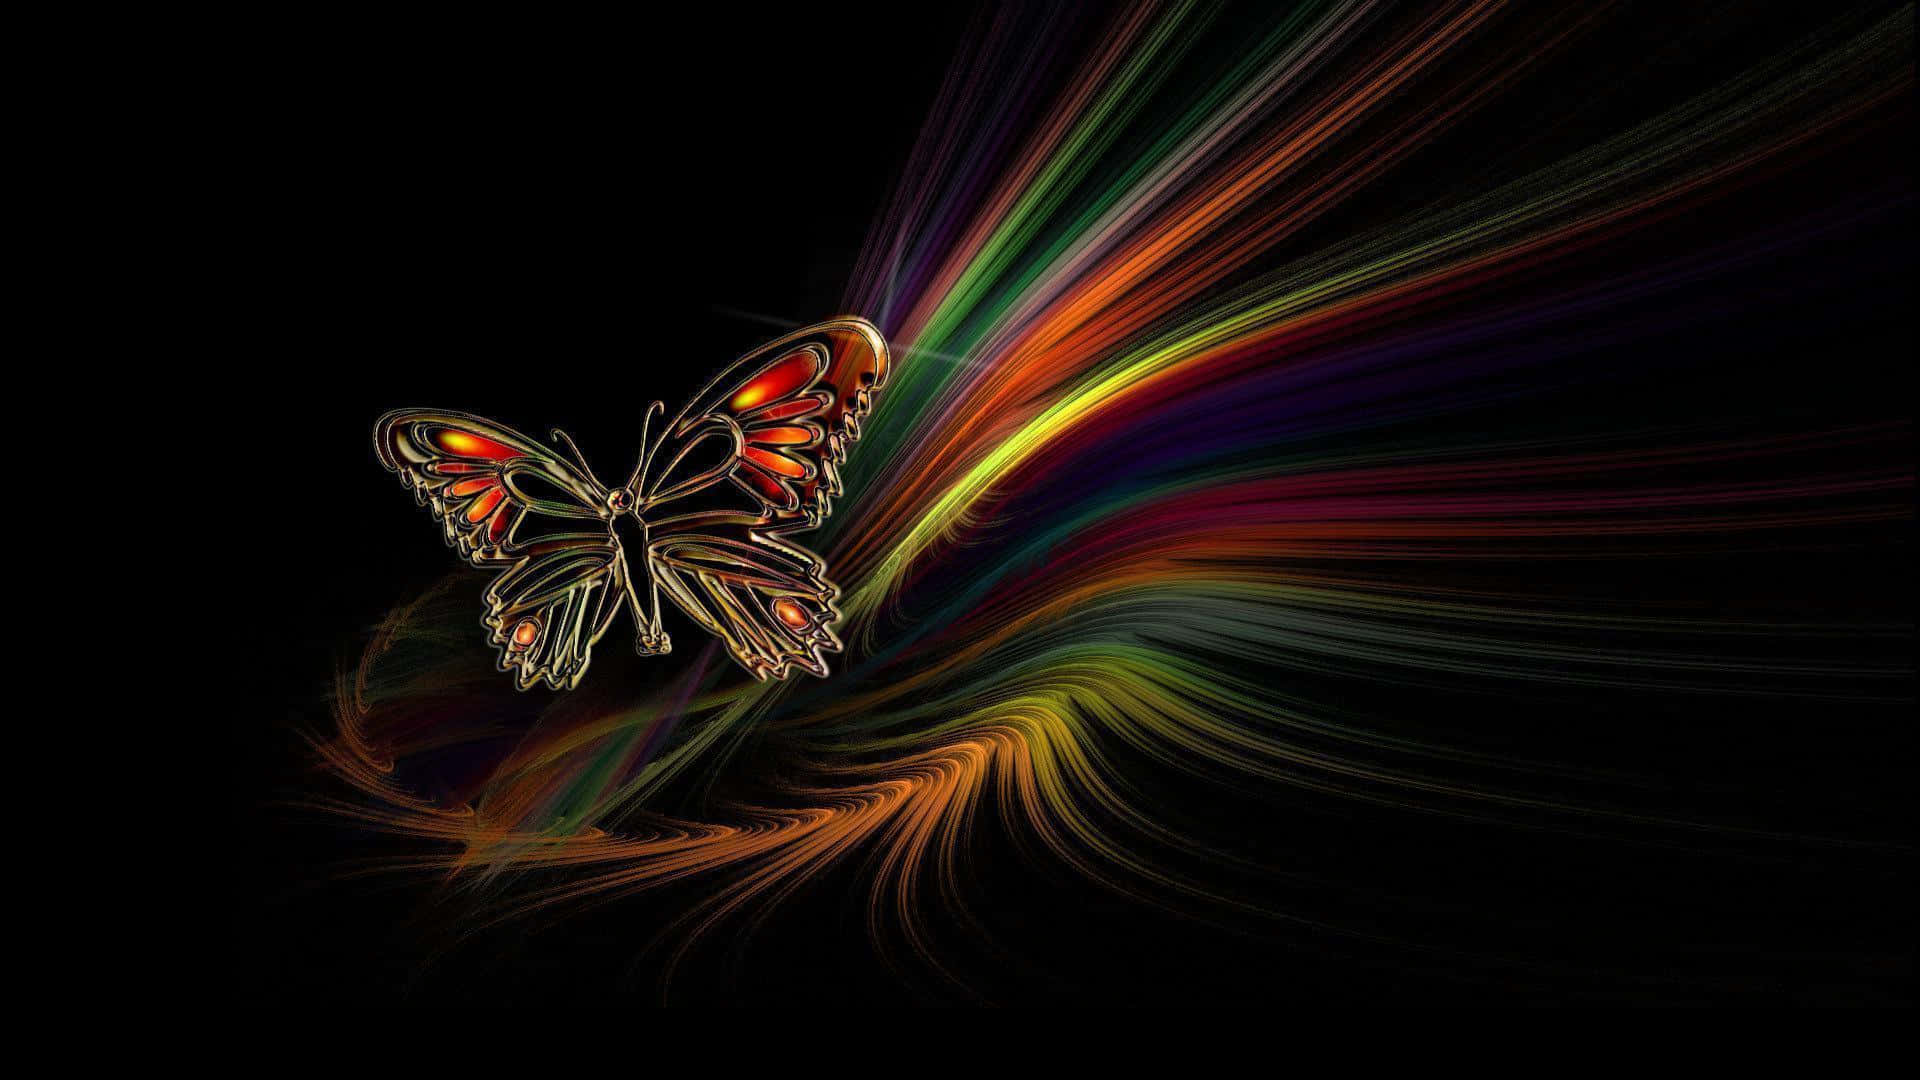 Abstract Butterfly Desktop Wallpaper